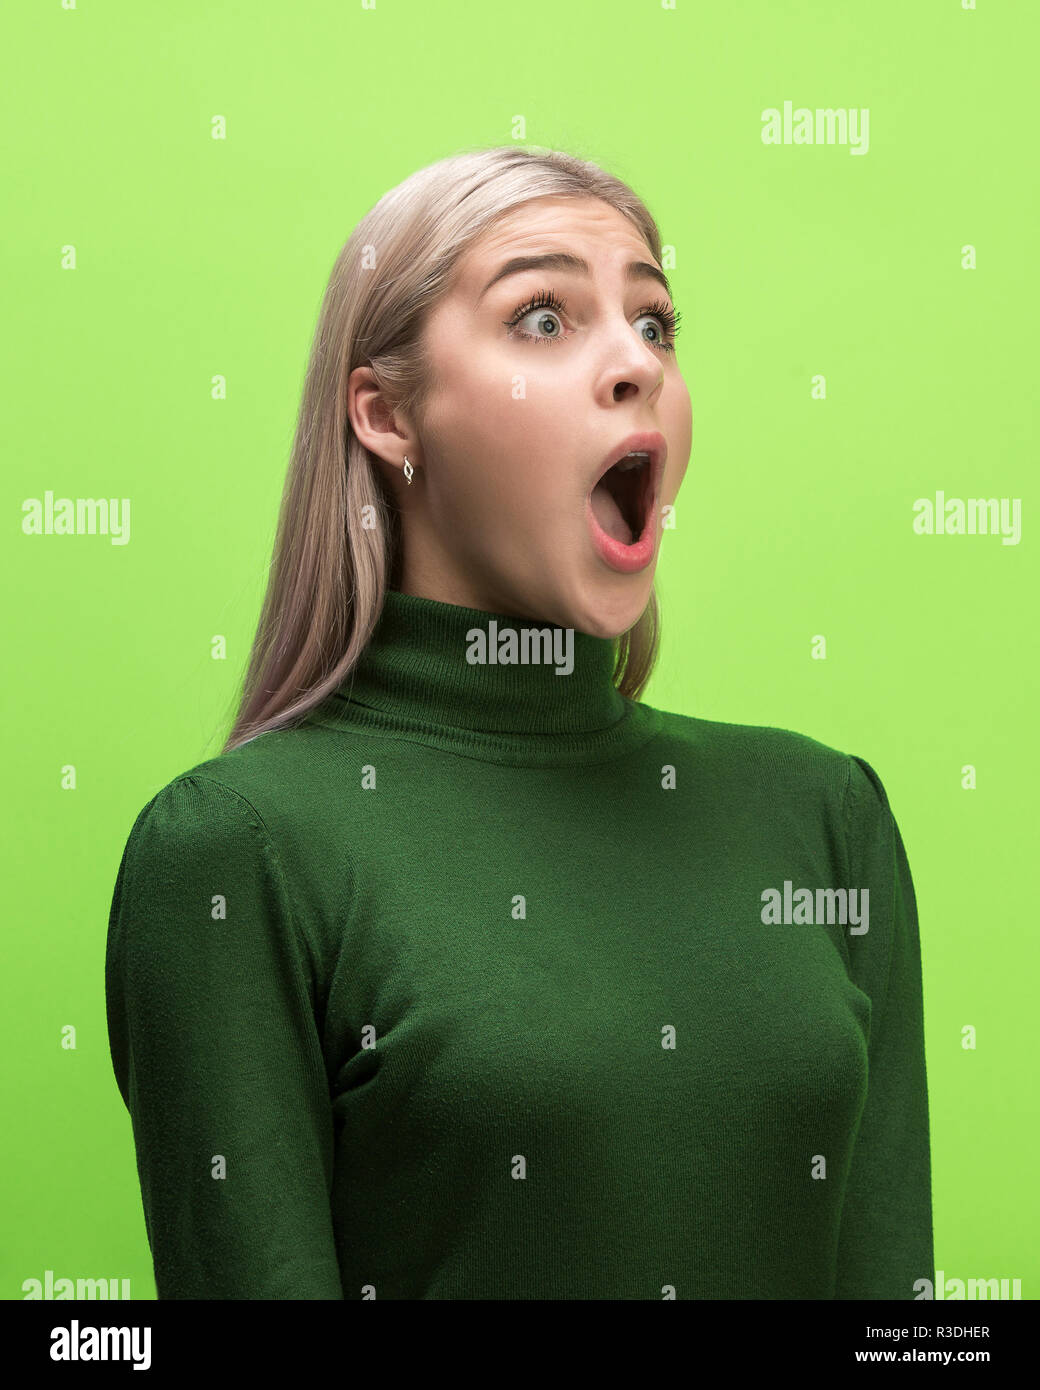 Das überrascht und erstaunt junge Frau schreiend mit offenen Mund auf grünem Hintergrund isoliert. Konzept der Schock angesichts der menschlichen Emotion Stockfoto